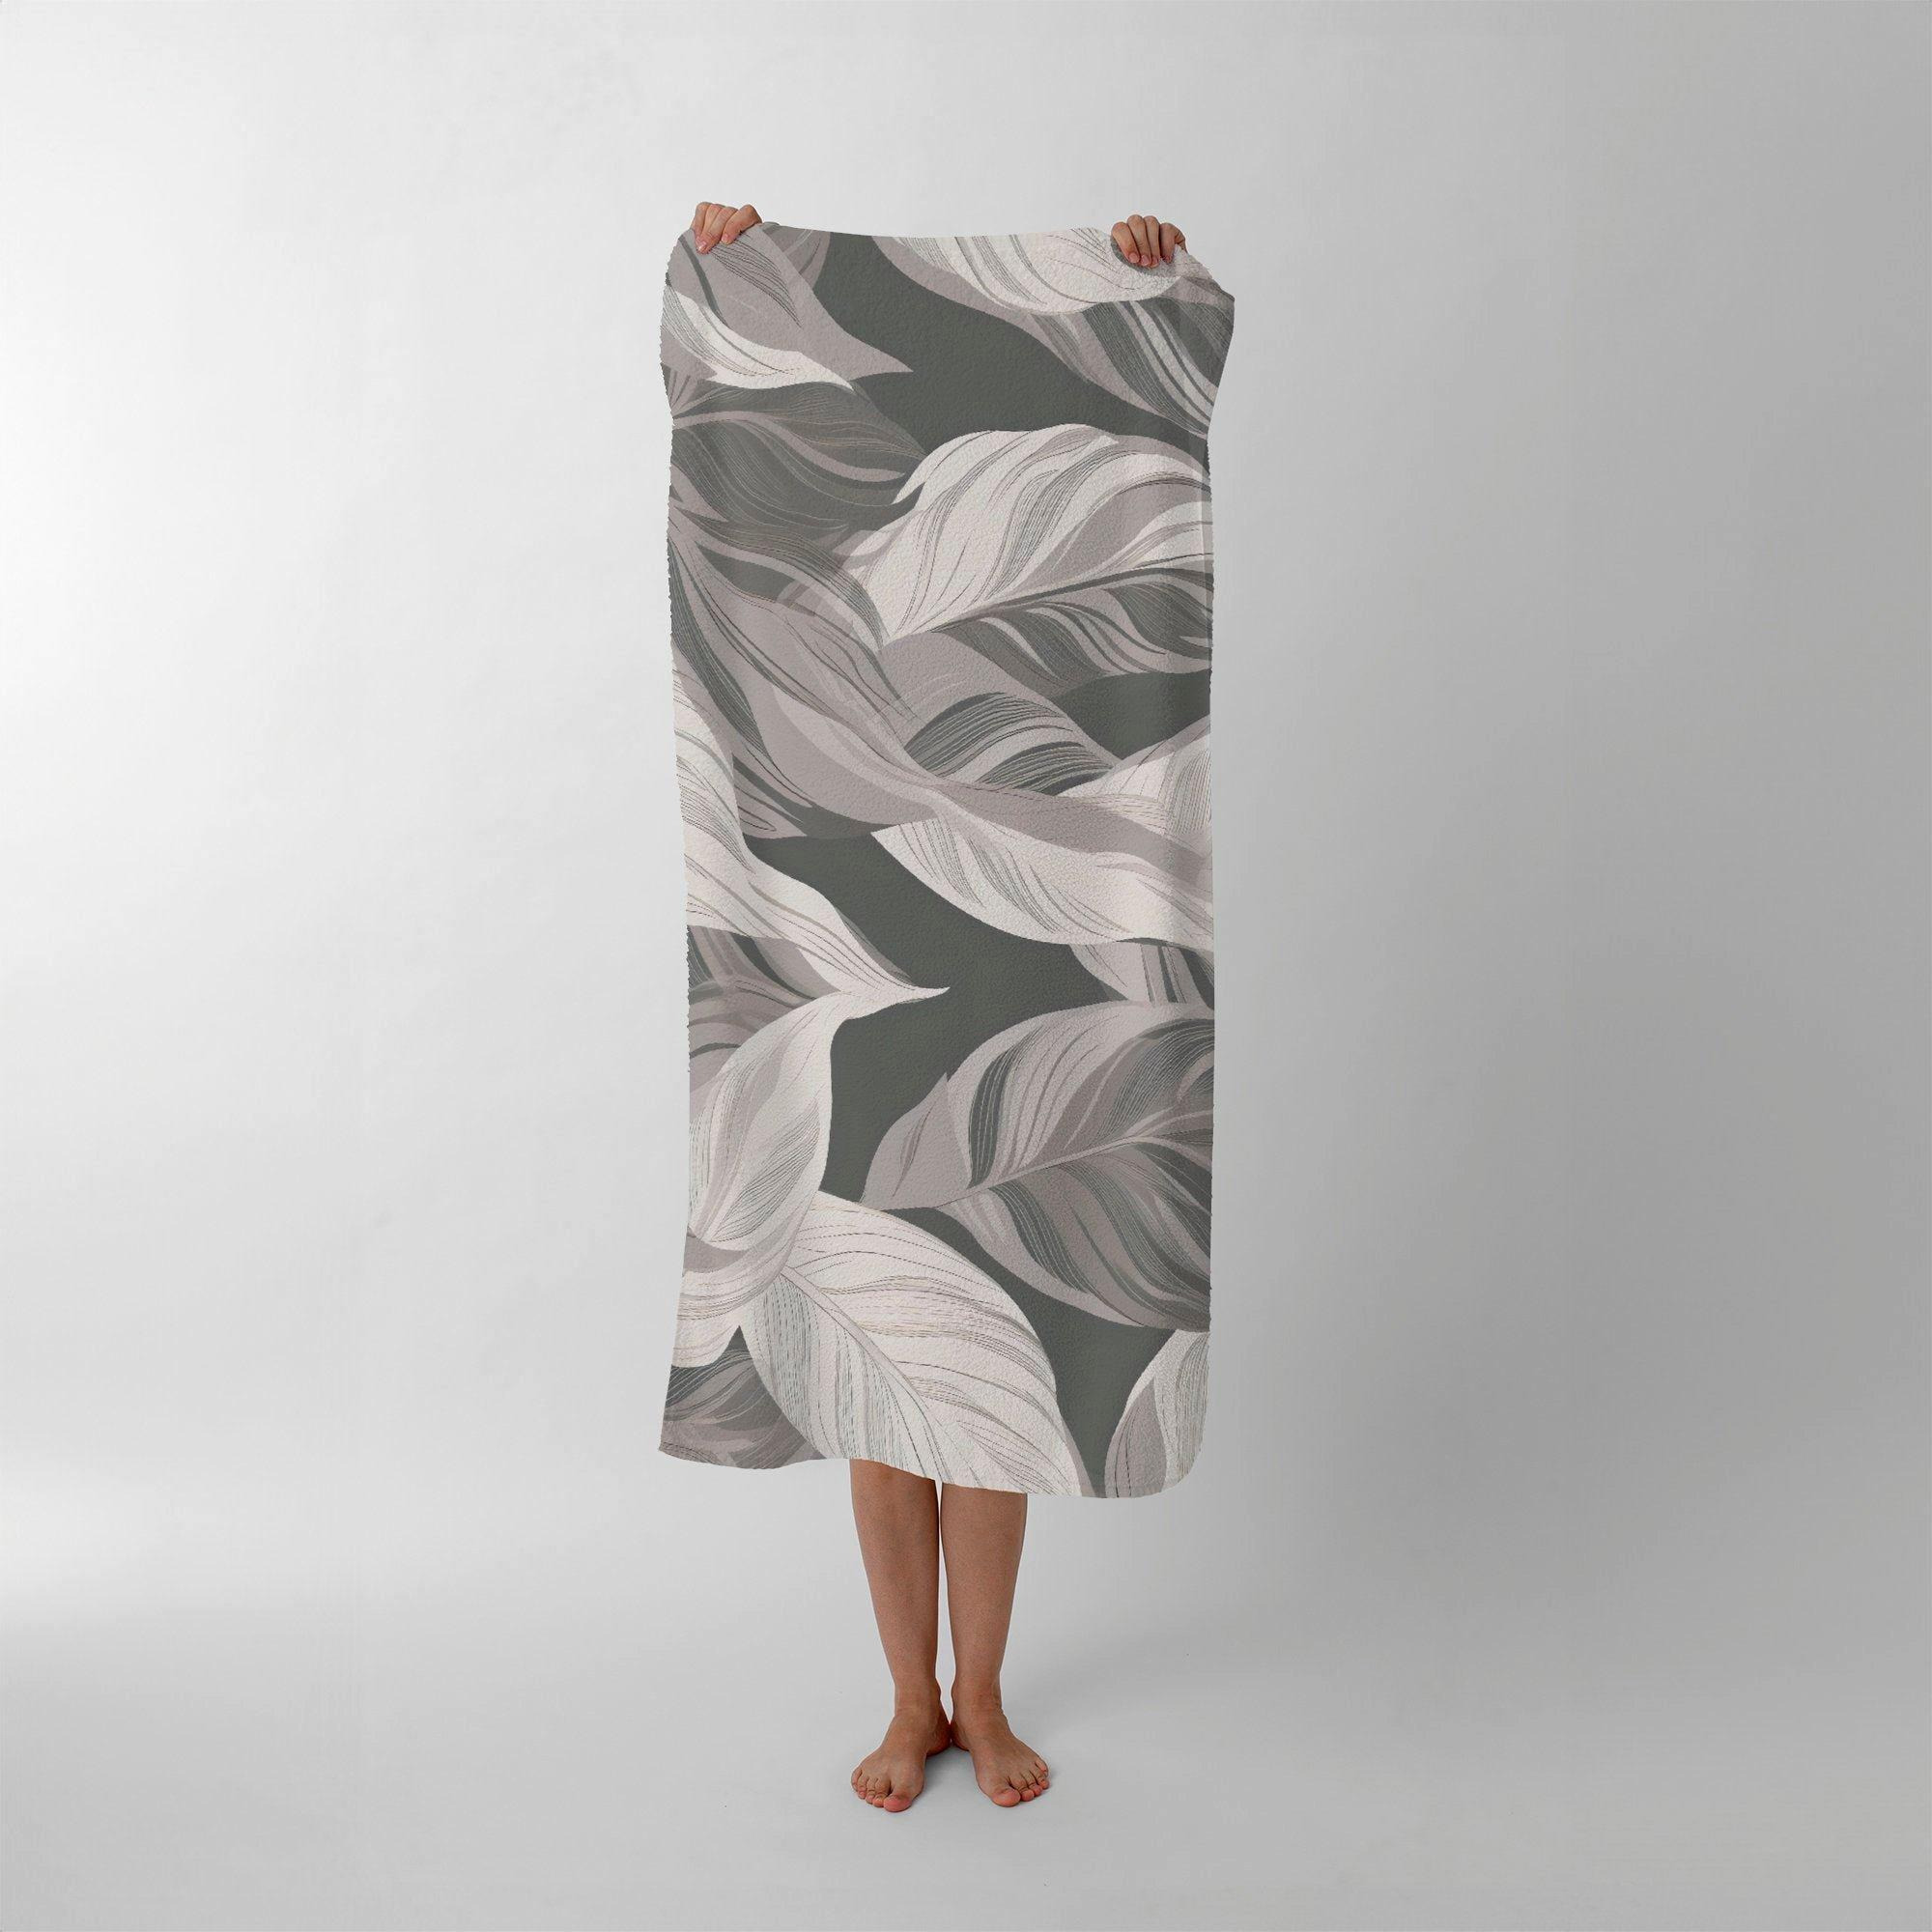 Grey Floral Leaves Beach Towel - image 1